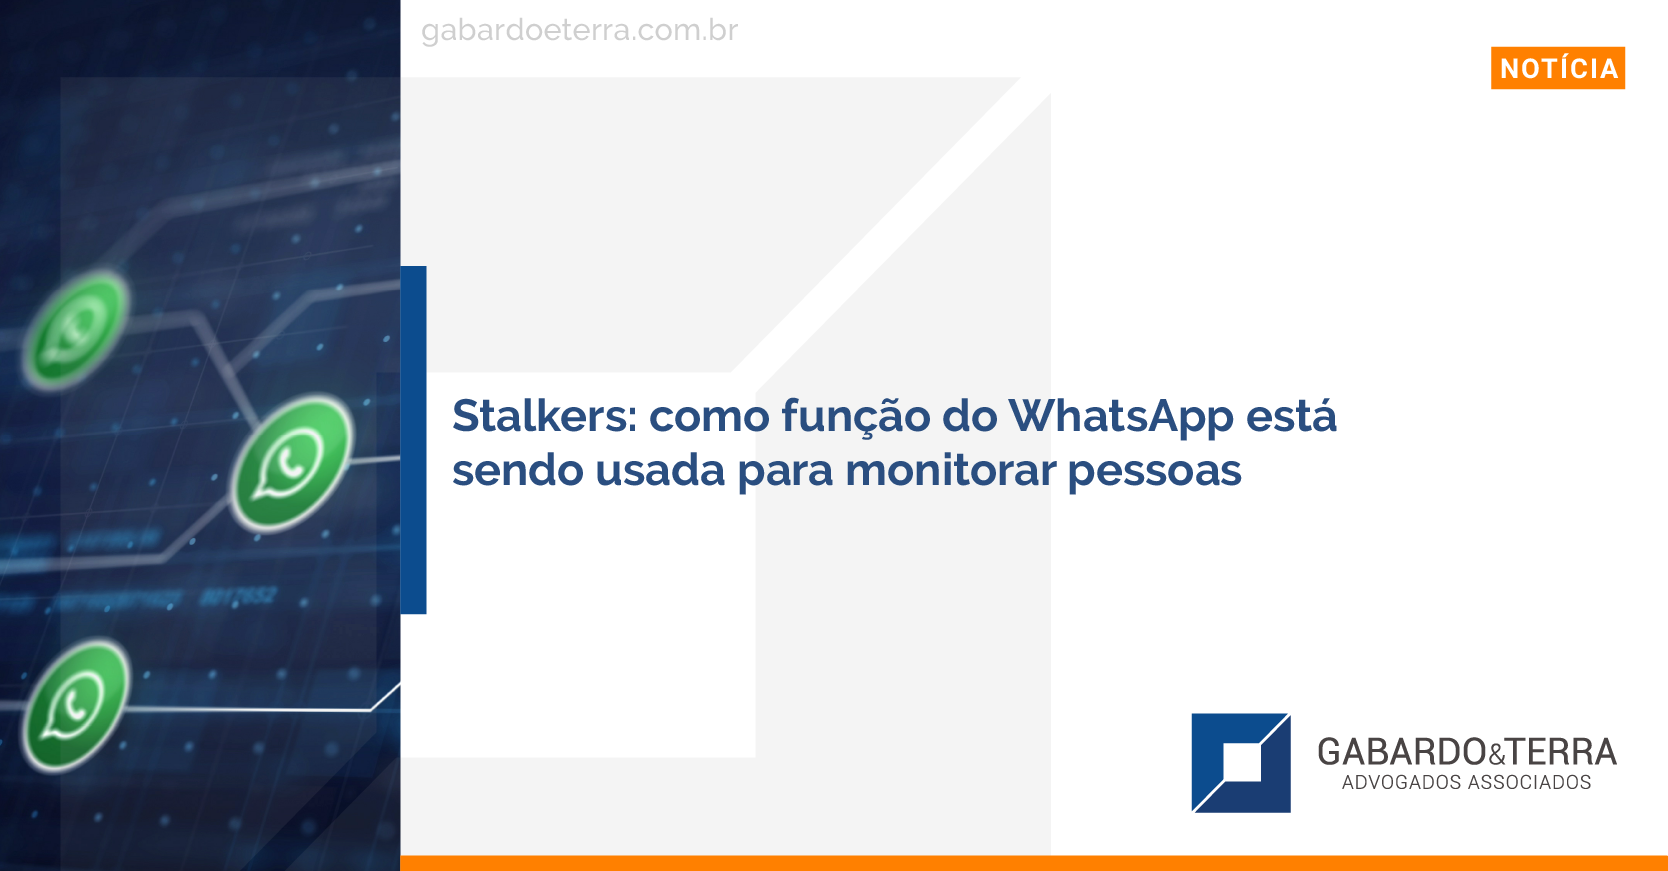 Stalkers: como função do WhatsApp está sendo usada para monitorar pessoas